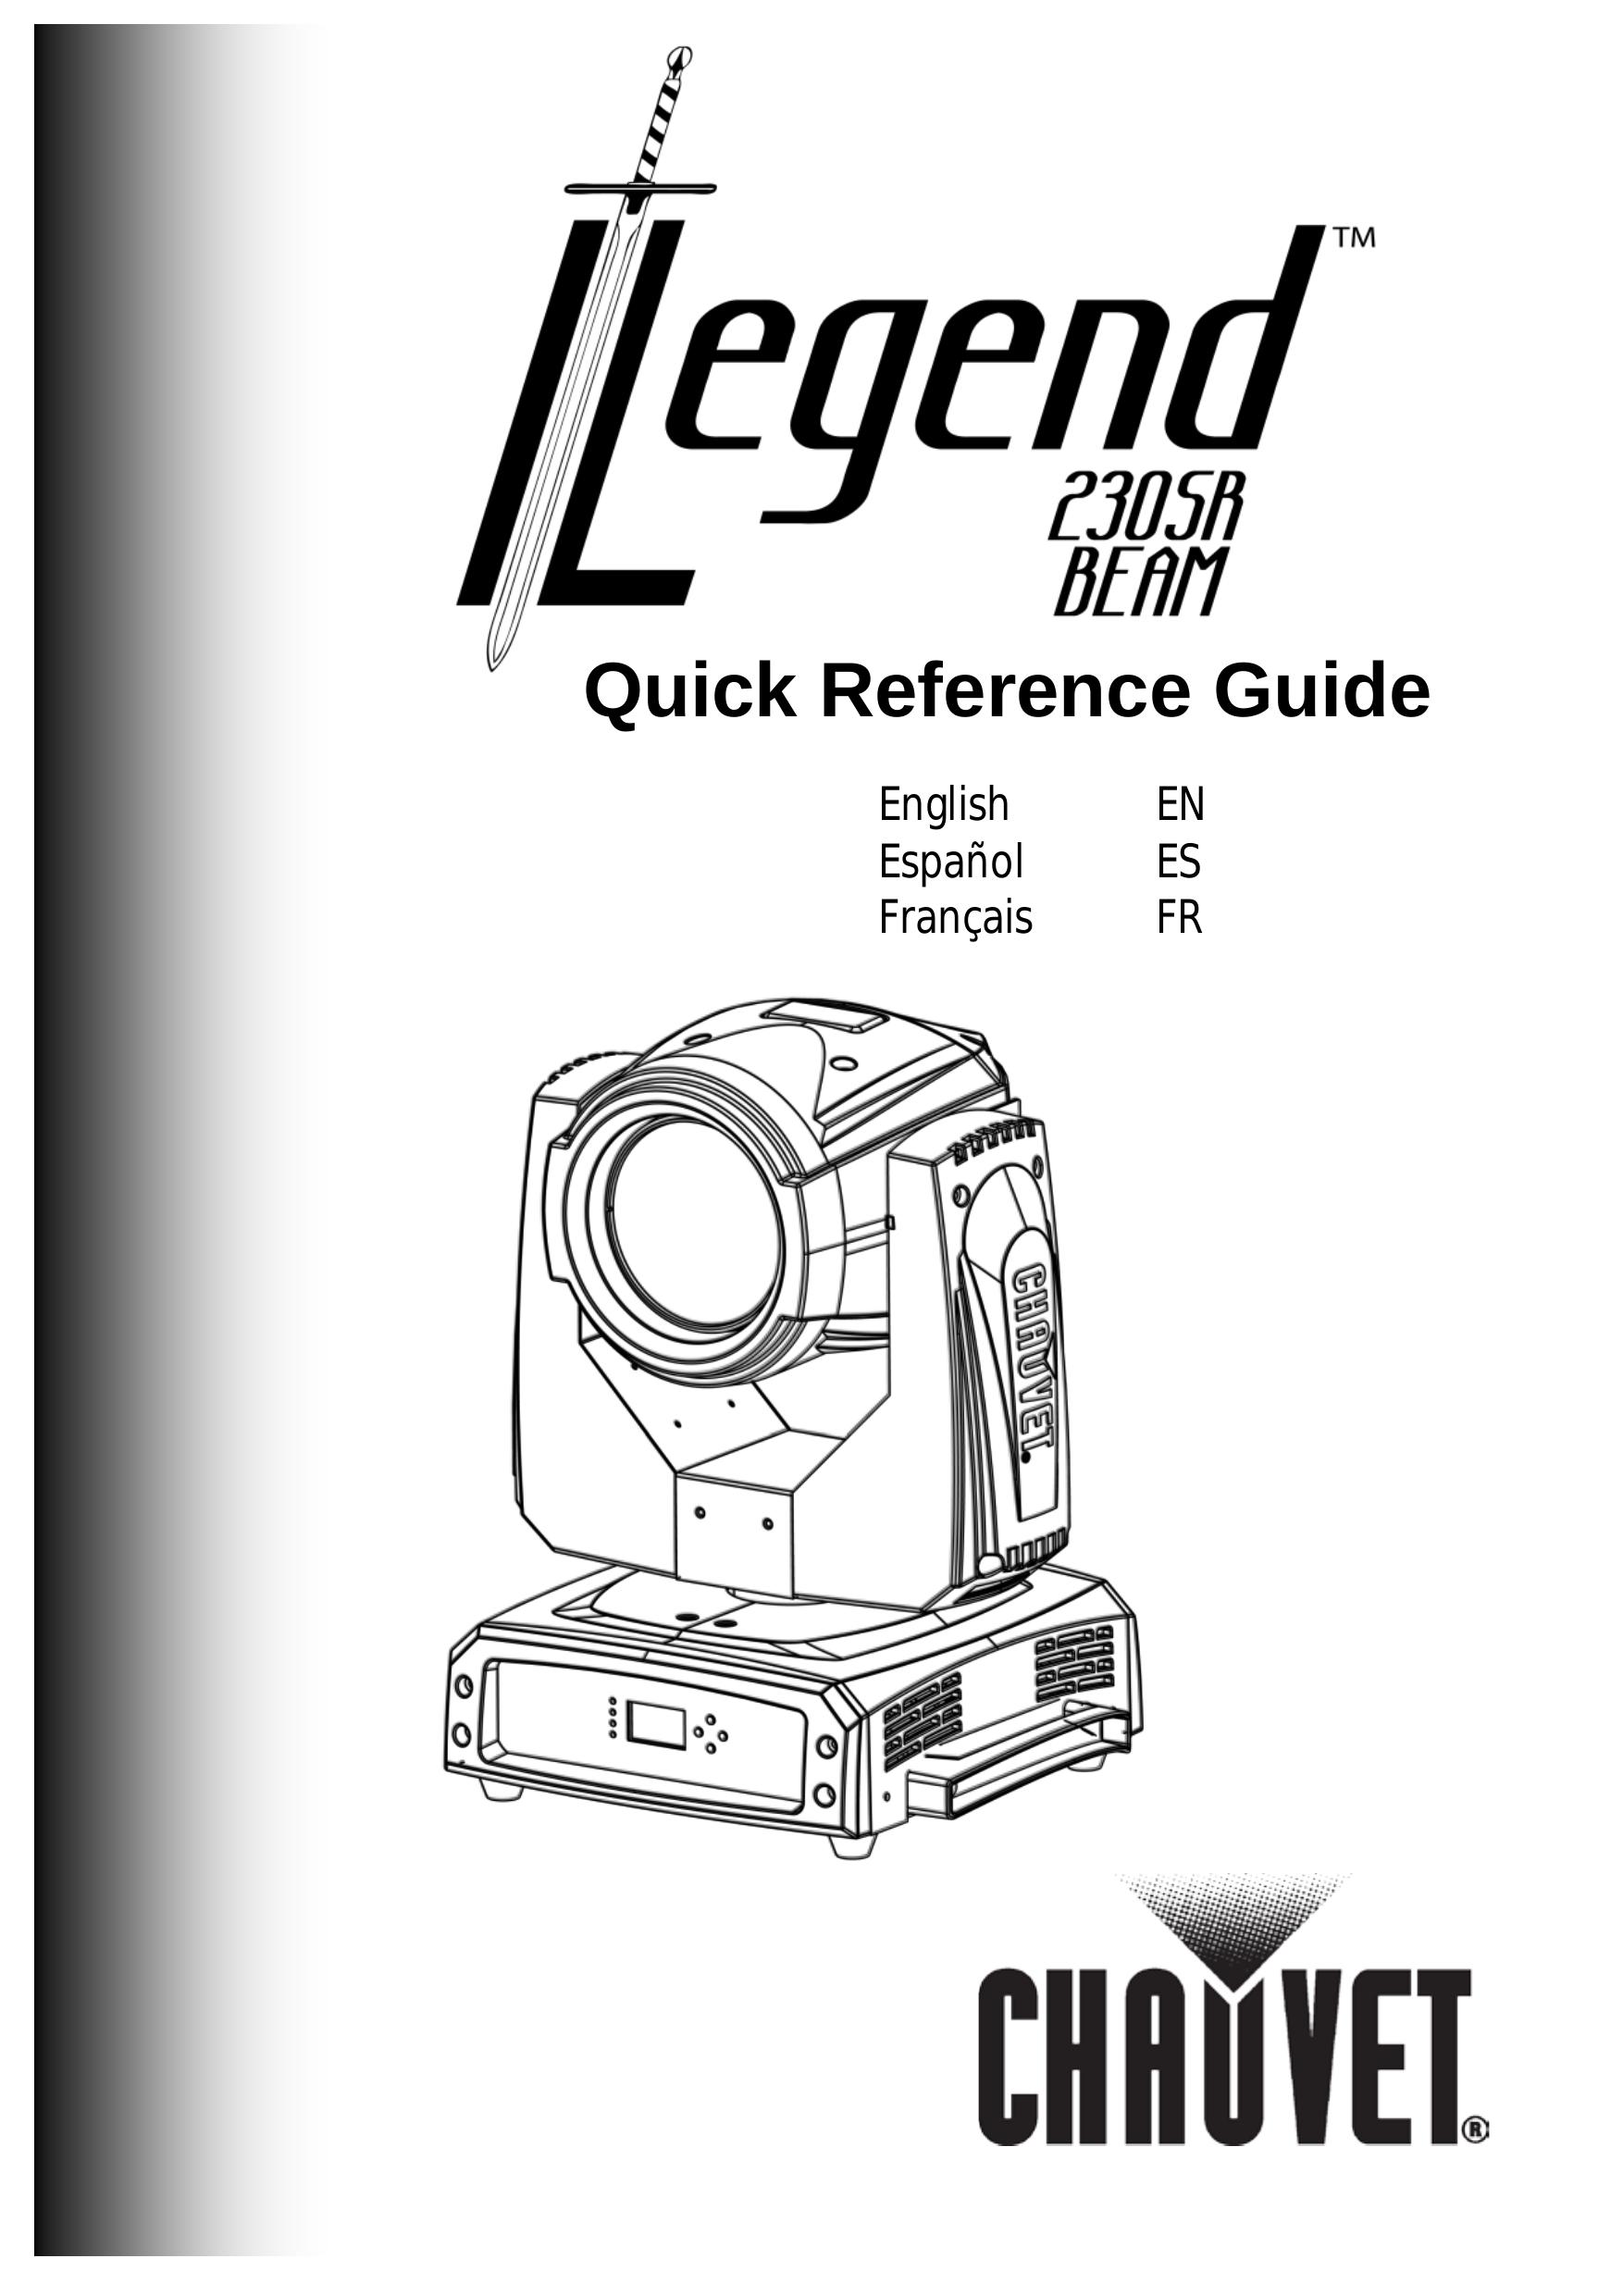 Chauvet 230SR Landscape Lighting User Manual